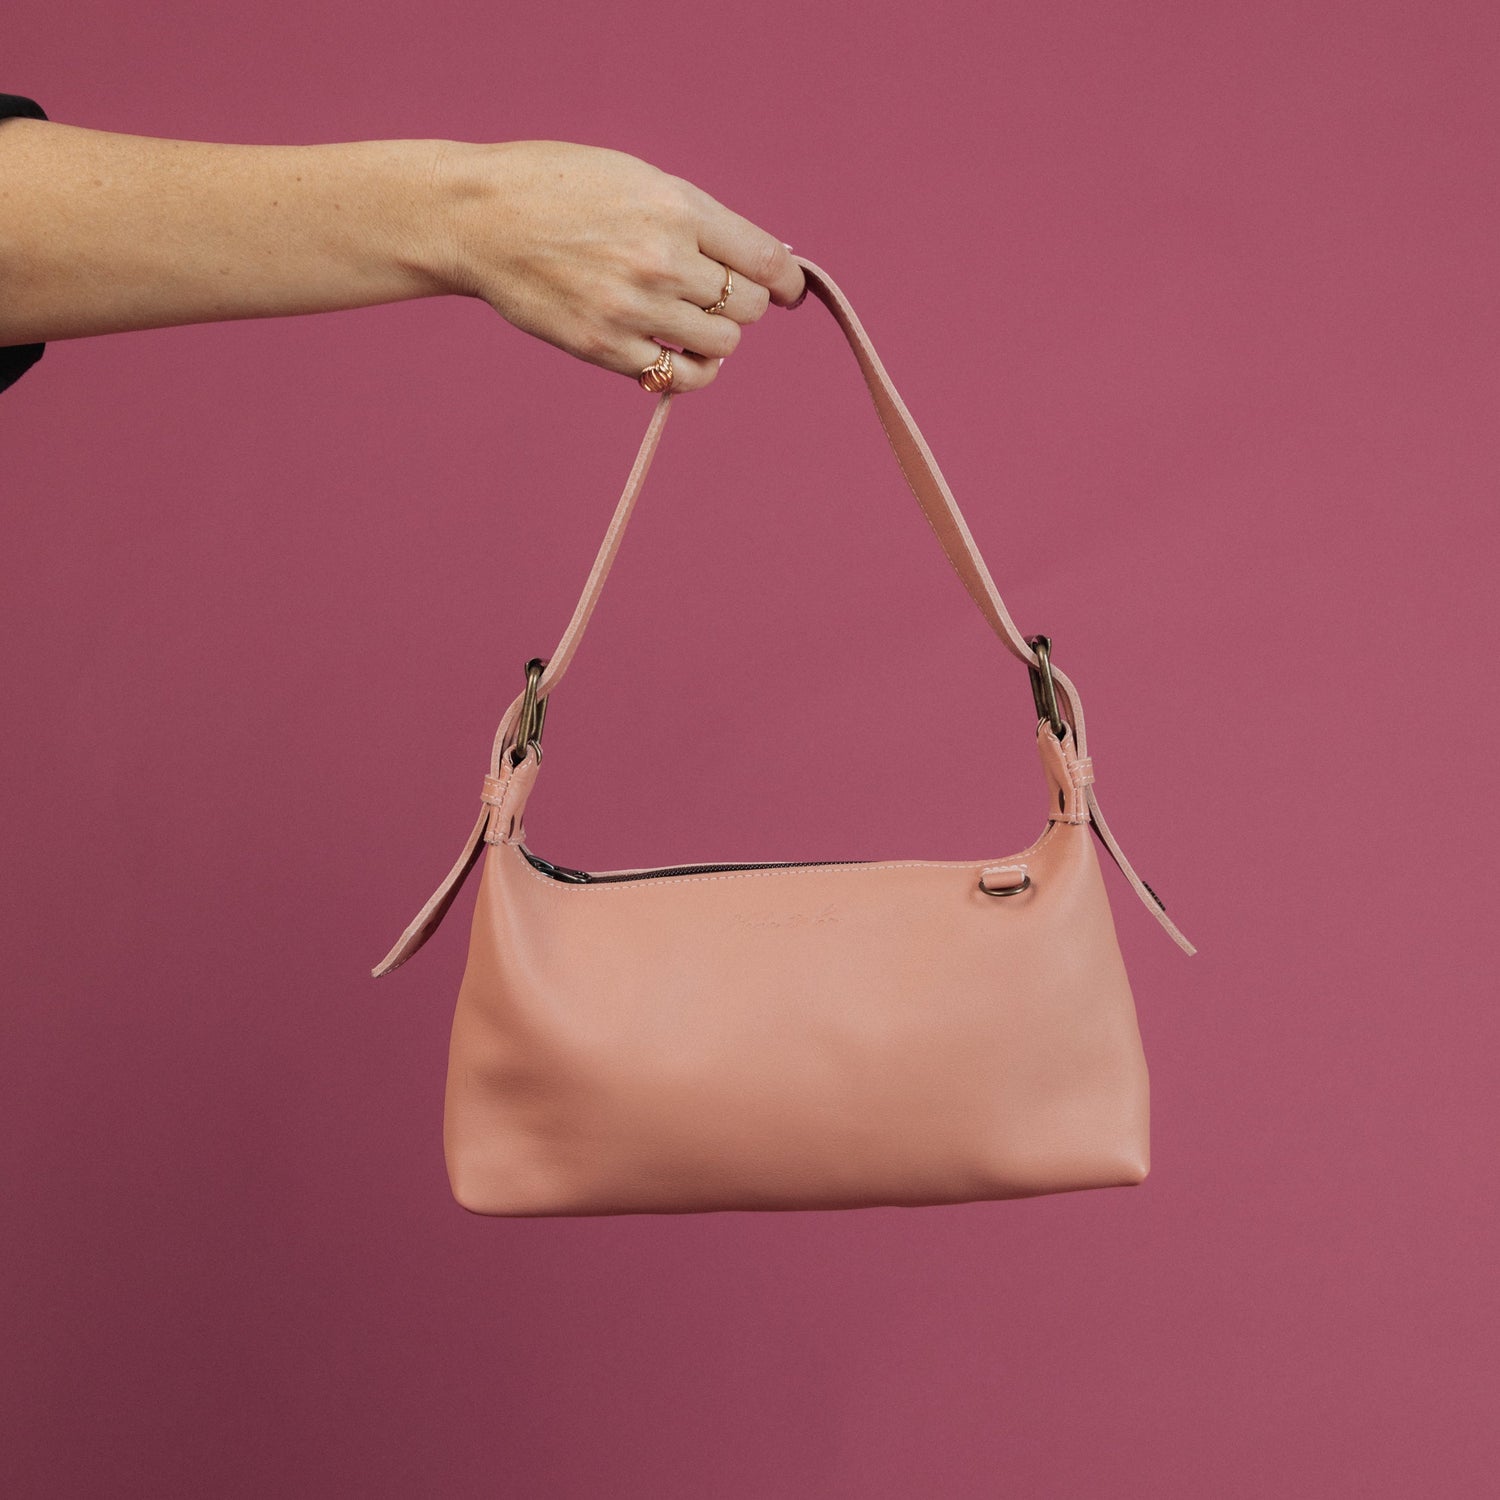 Zara : Pom Pom City Bag Review 